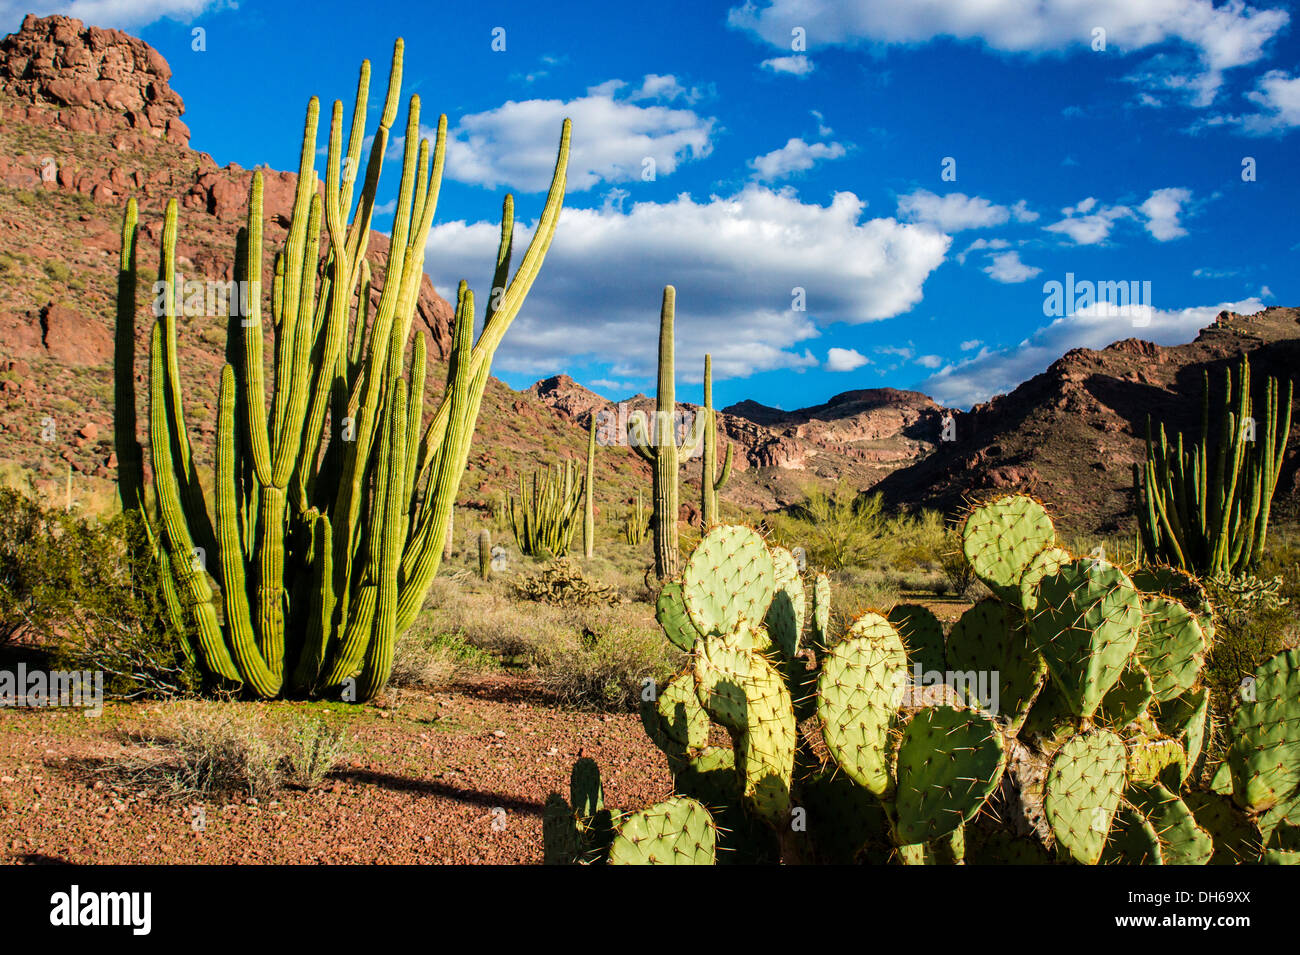 Nopales en primer plano con el Organ Pipe Cactus mediados de-tierra y cacto saguaro en segundo plano. Foto de stock